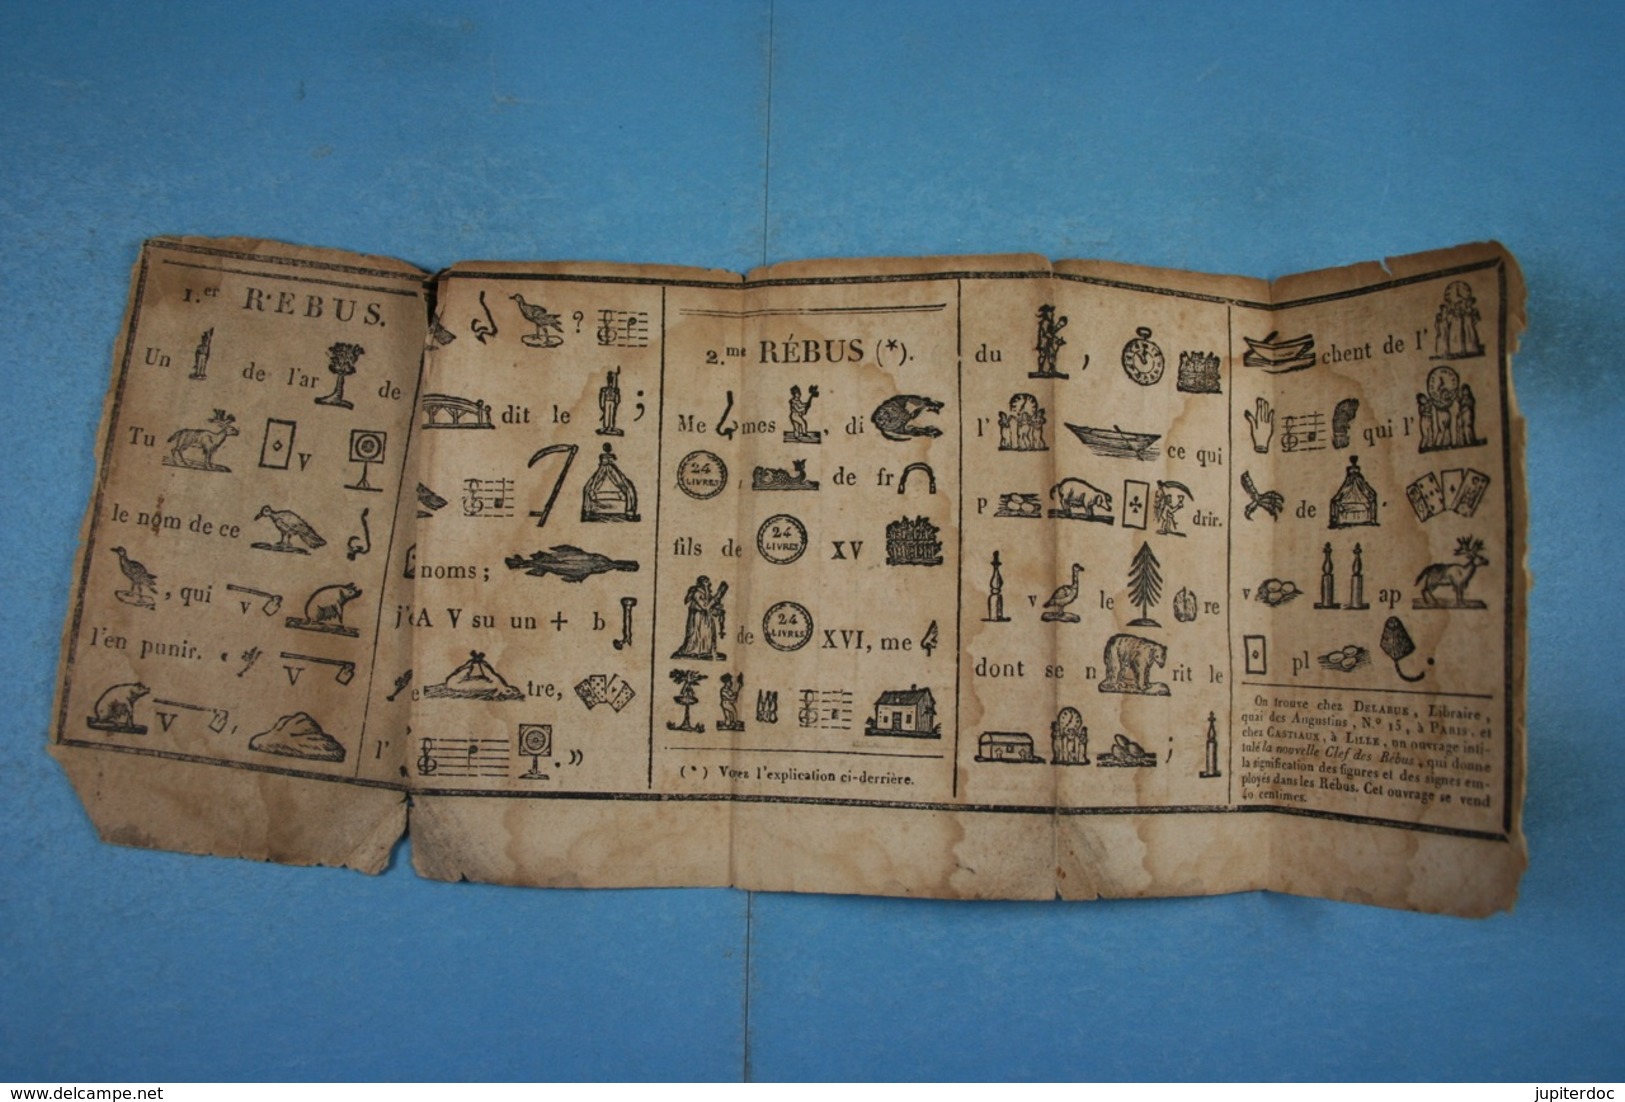 Le Vrai Double Matthieu Laensberg ou le Bon Astrologue pour 1827 Avec feuillet de rébus Edit. Castiaux Lille